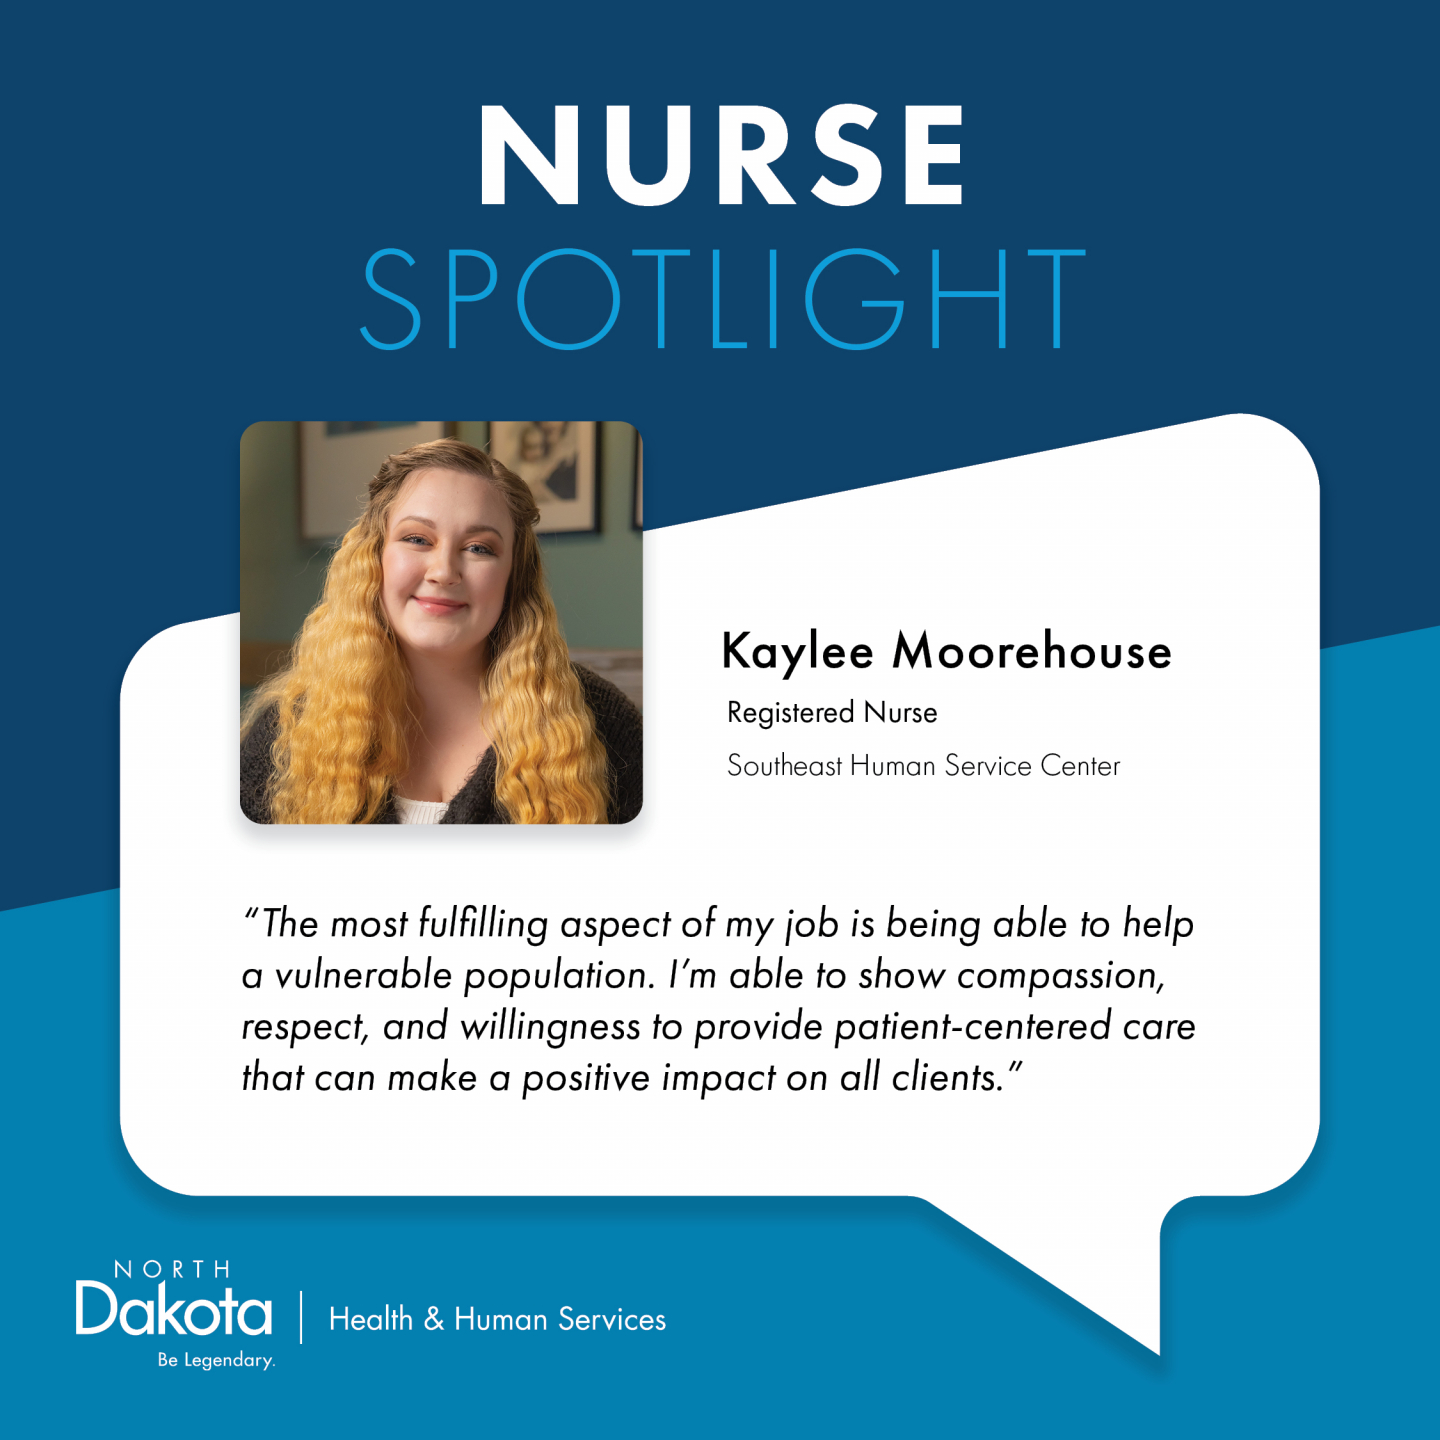 Nurse Spotlight: Kaylee Moorehouse